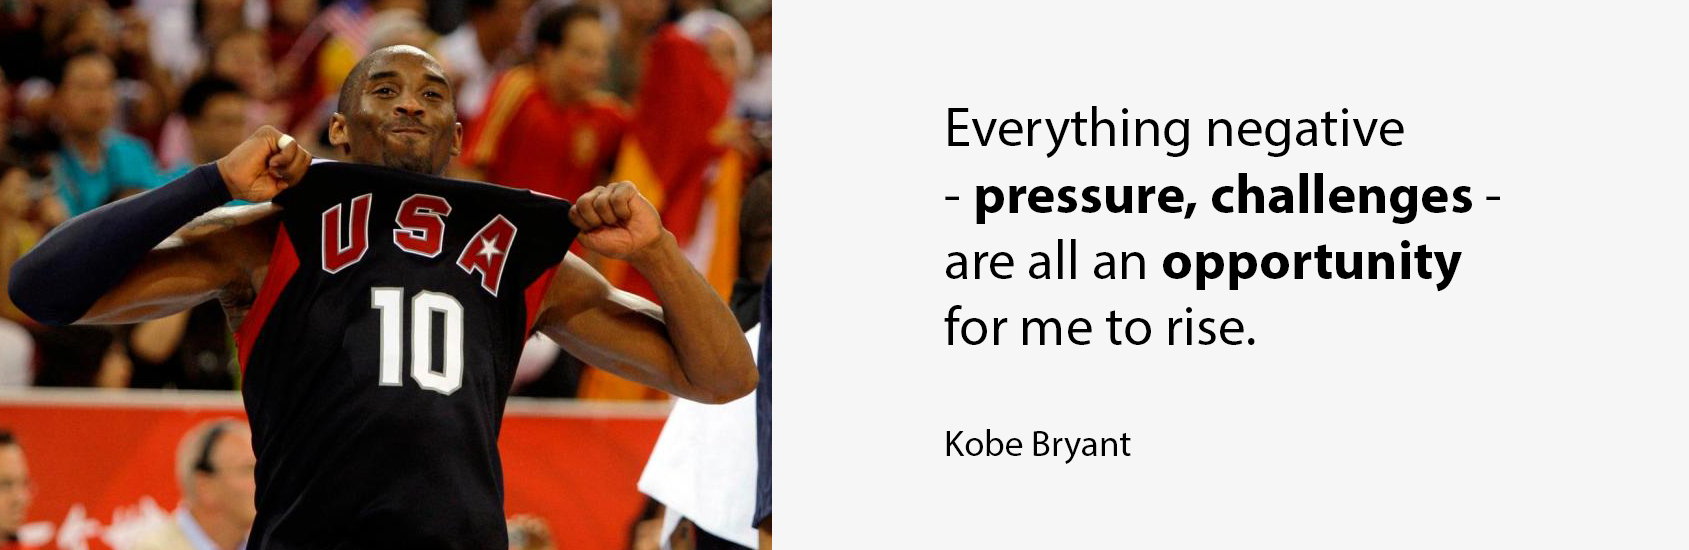 Kobe Bryant on Self Leadership